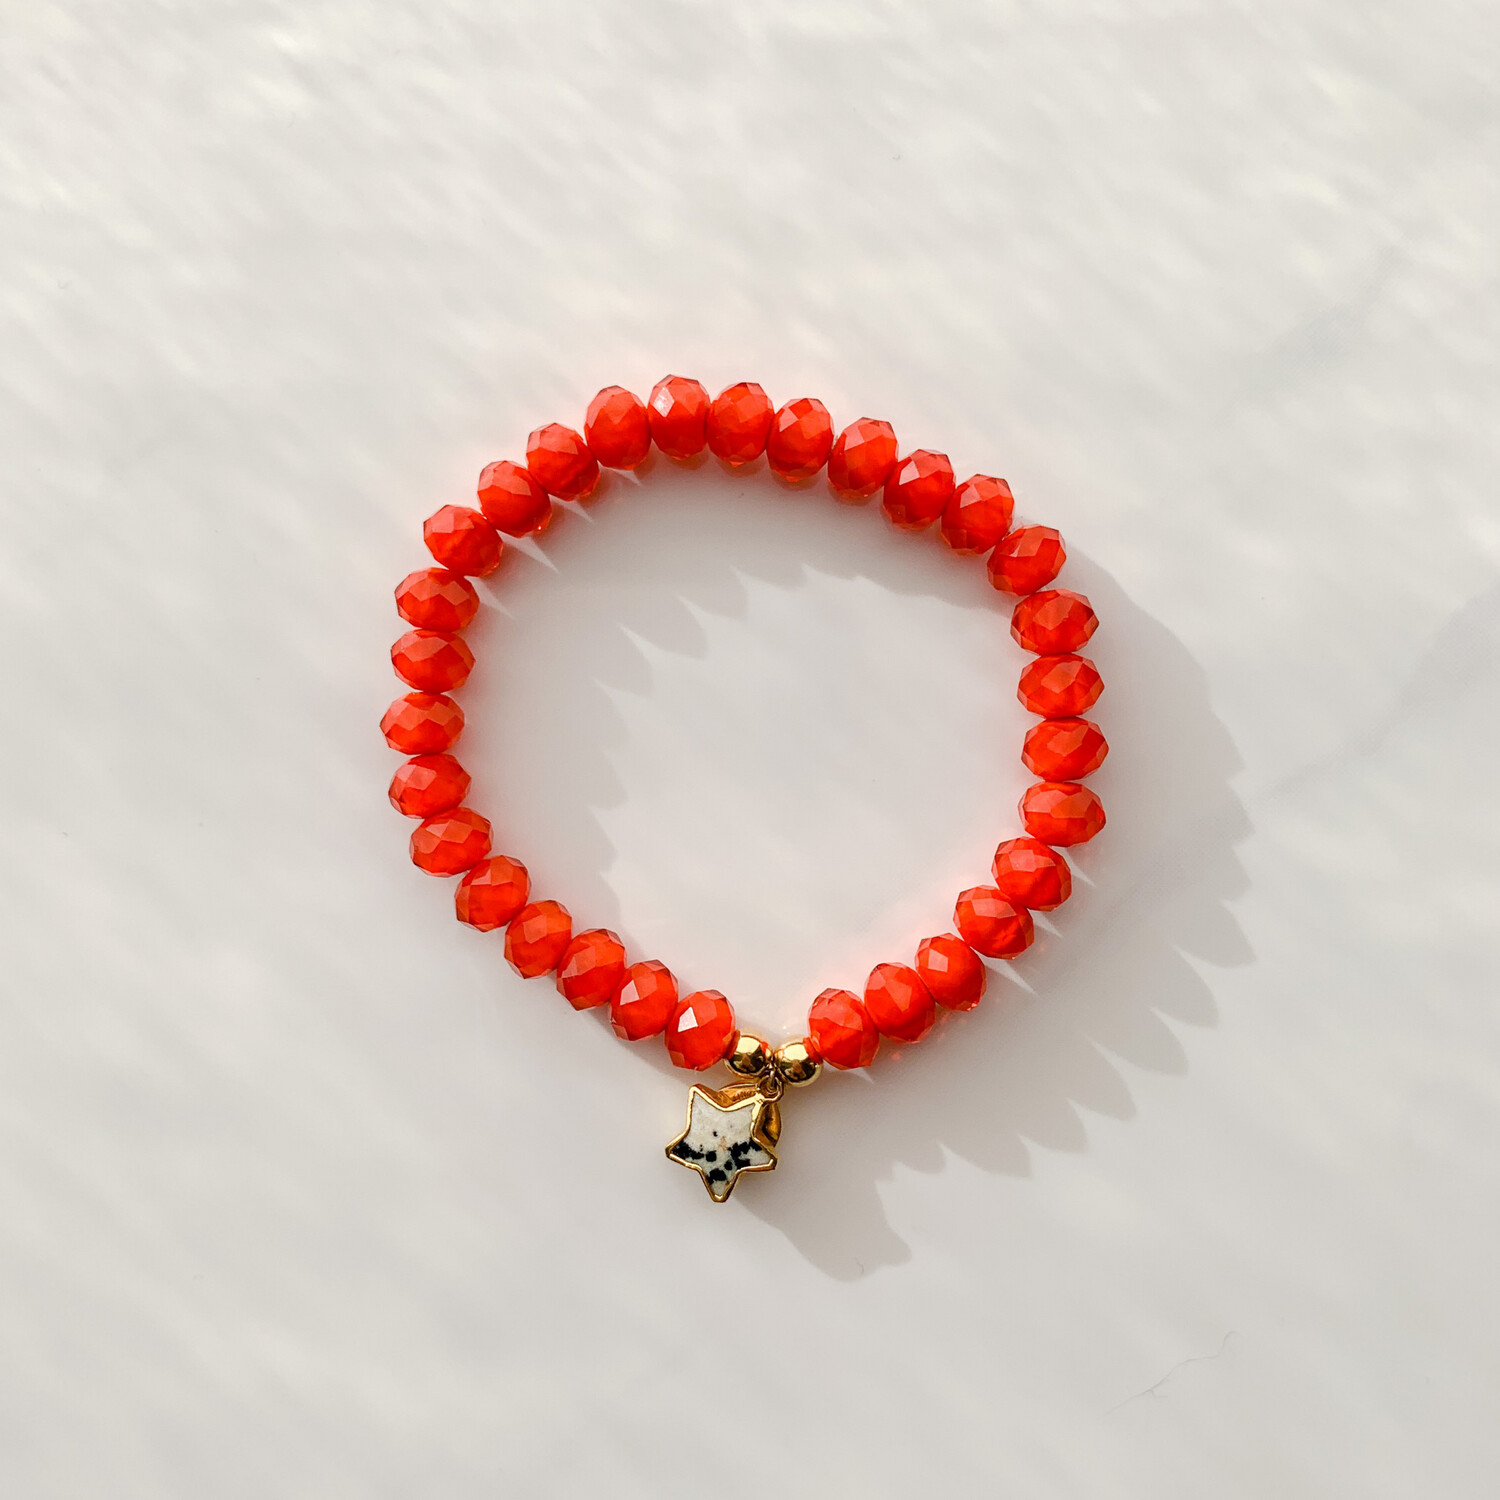 Charity Bracelet in Orange